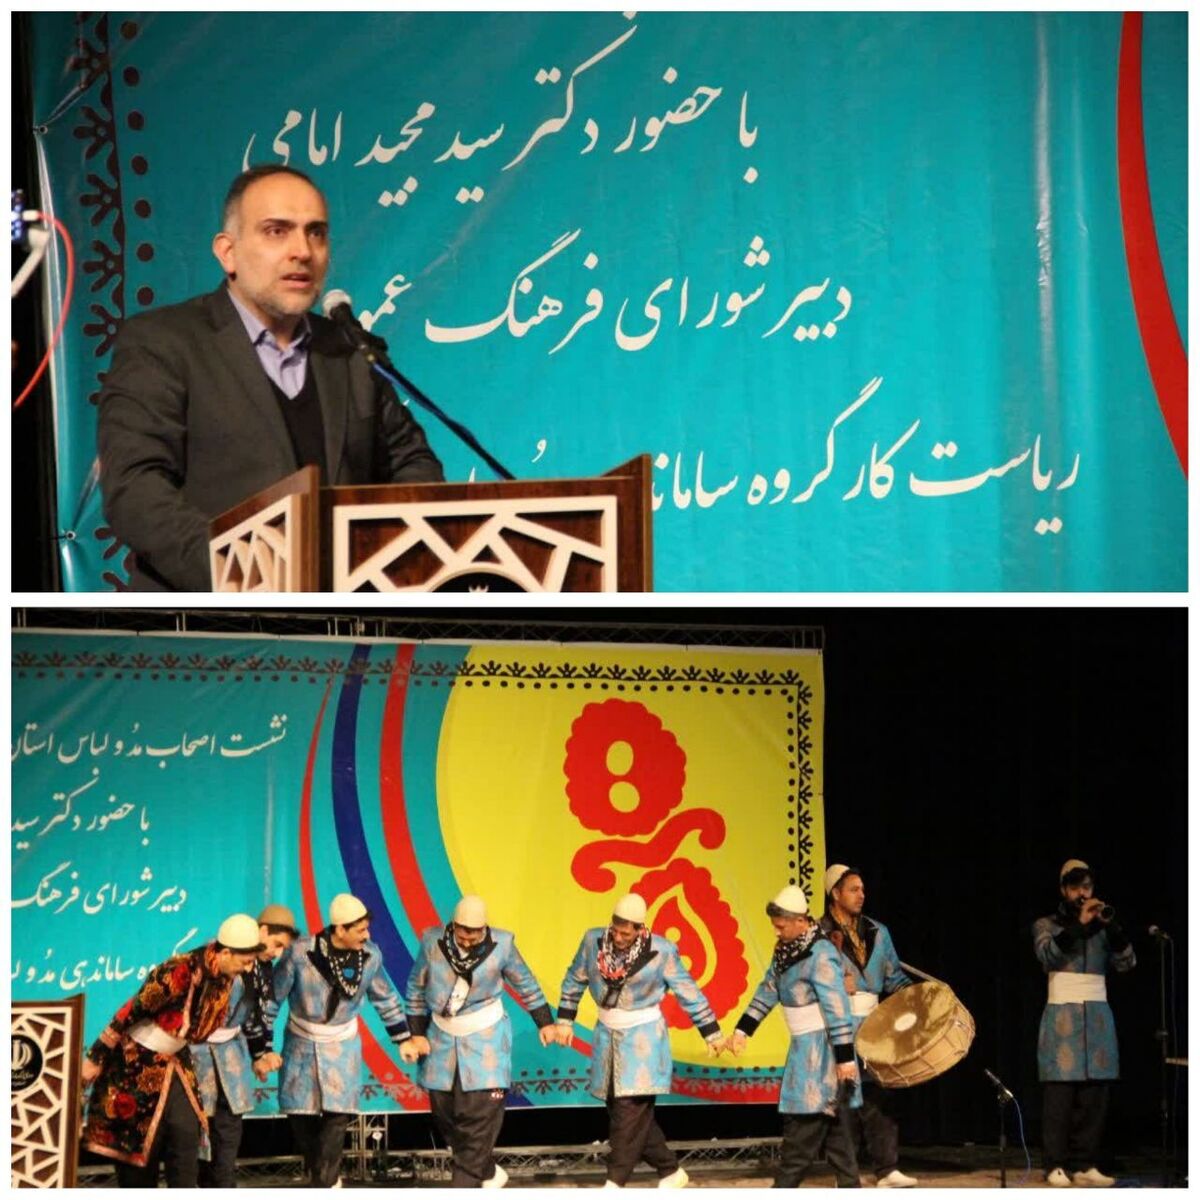 برگزاری جشنواره لباس محلی زاگرس نشینان با محوریت لرستان